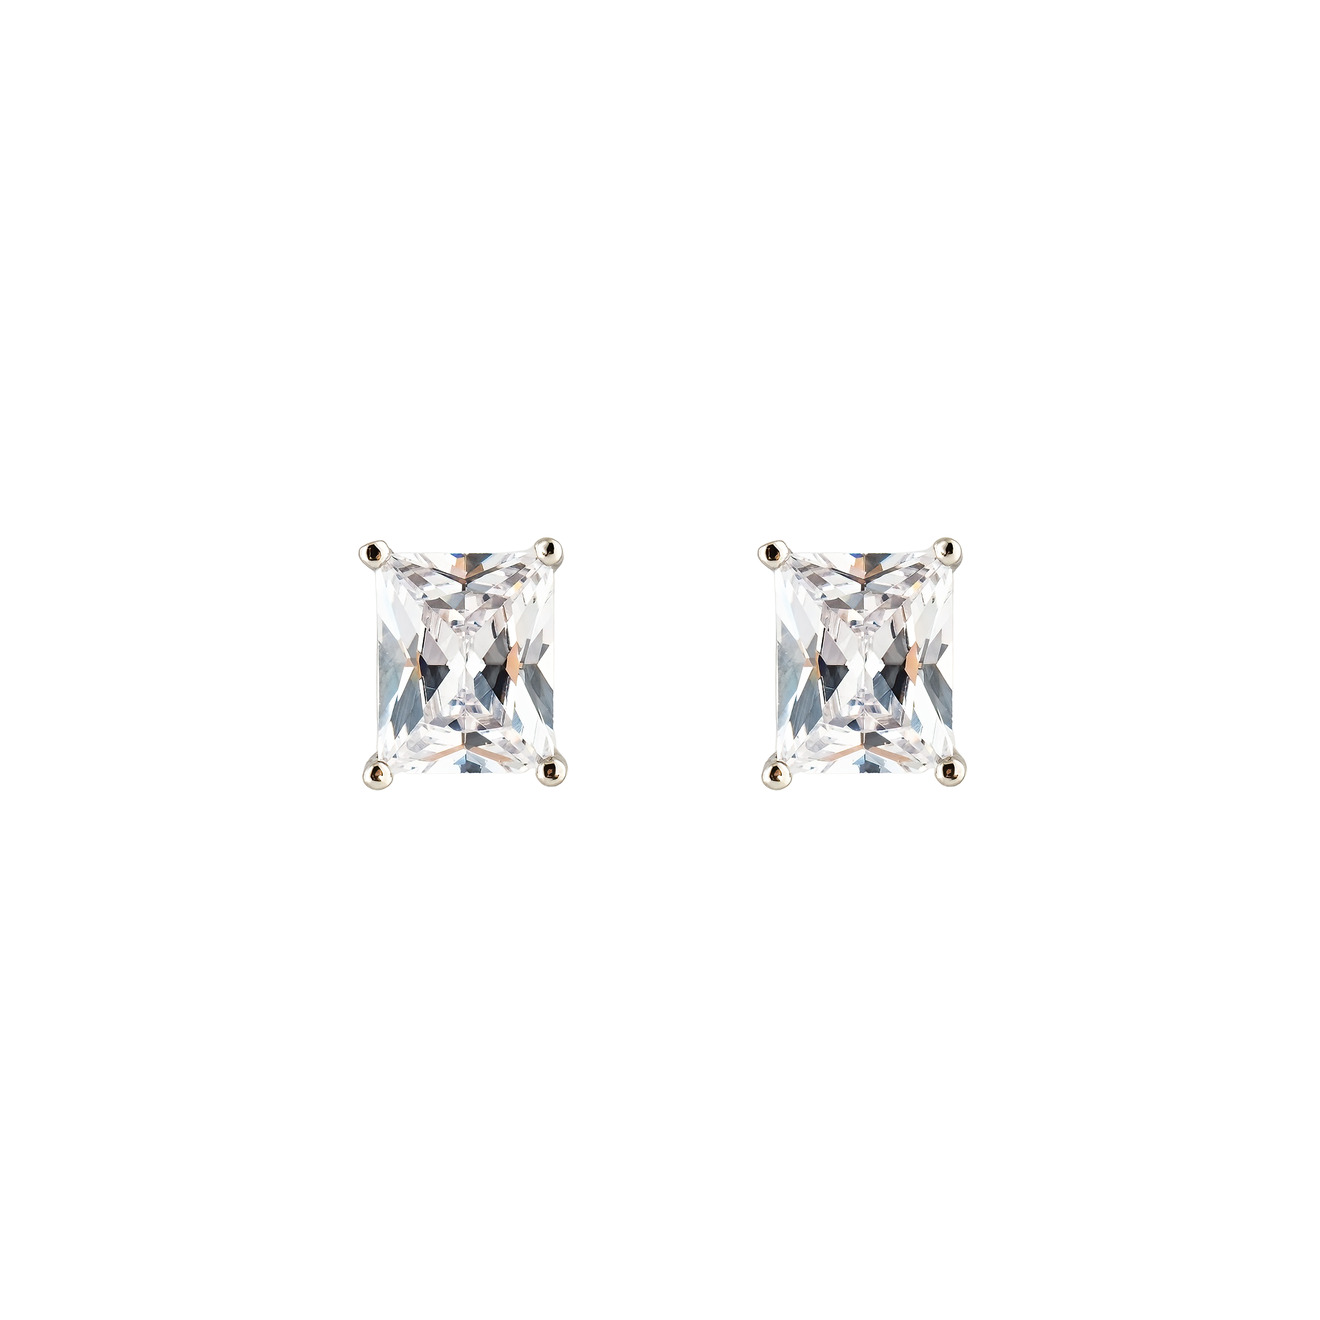 Herald Percy Серебристые серьги-пусеты с белым кристаллом herald percy золотистая цепочка с подвеской кругом с кристаллом